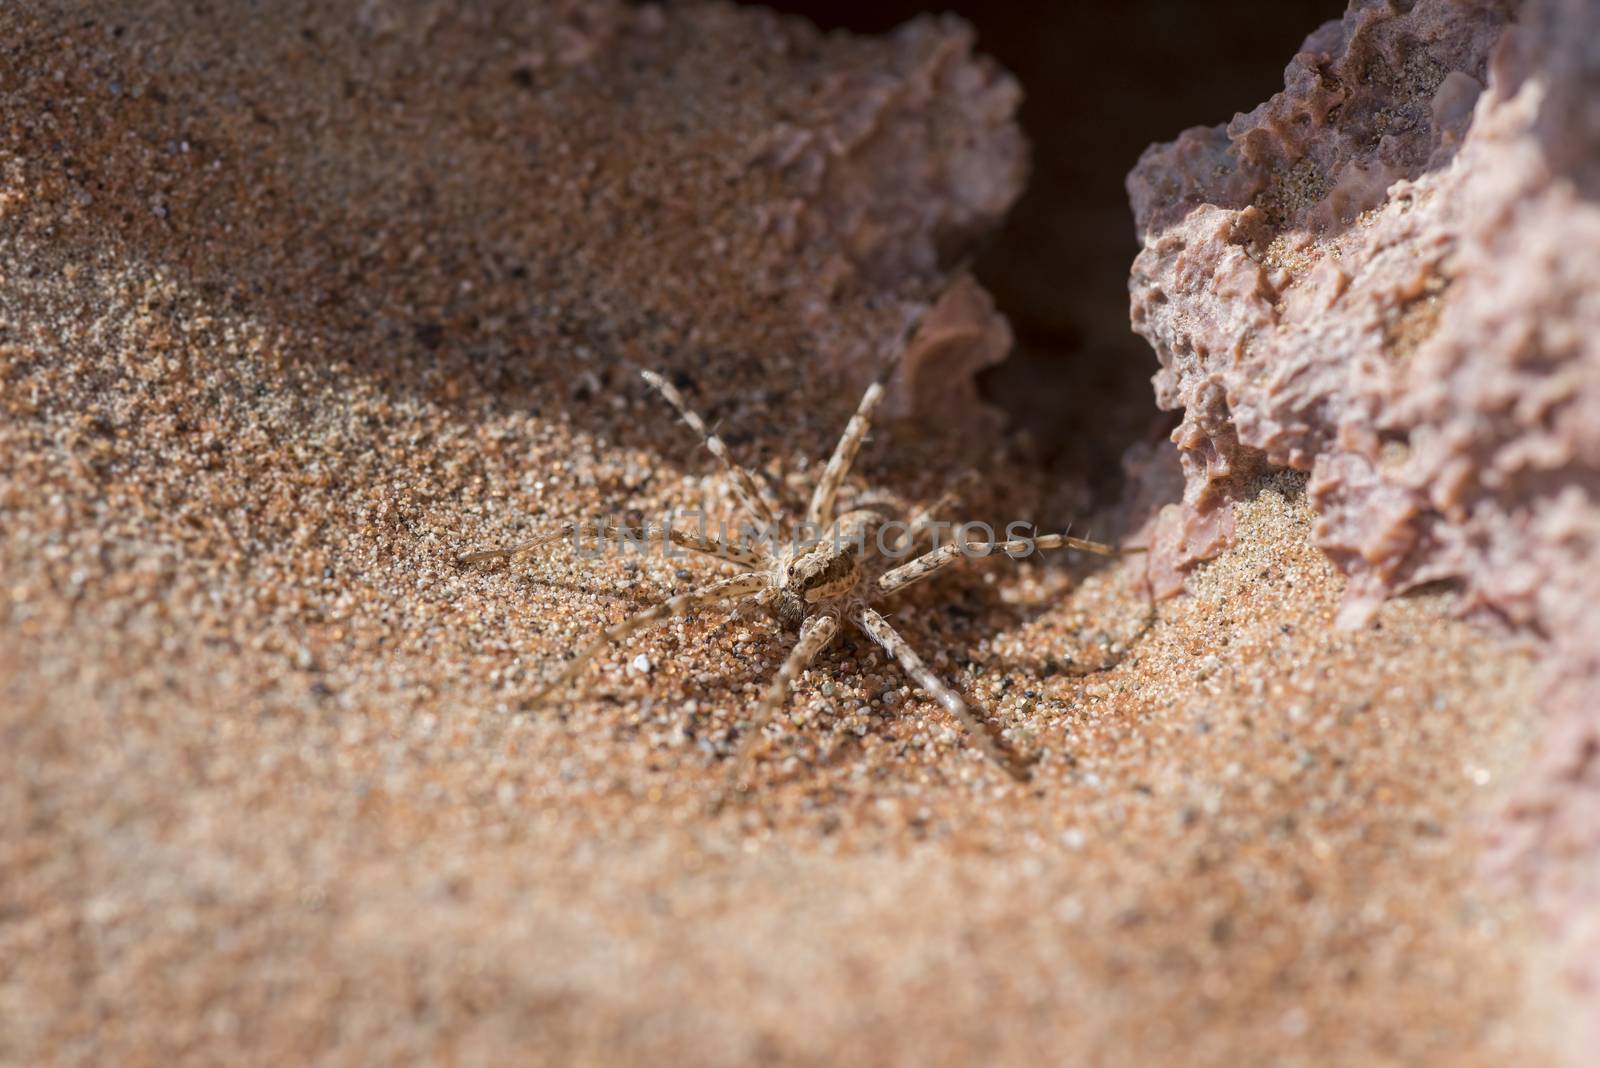 Wolf Spider in the desert, UAE by GABIS